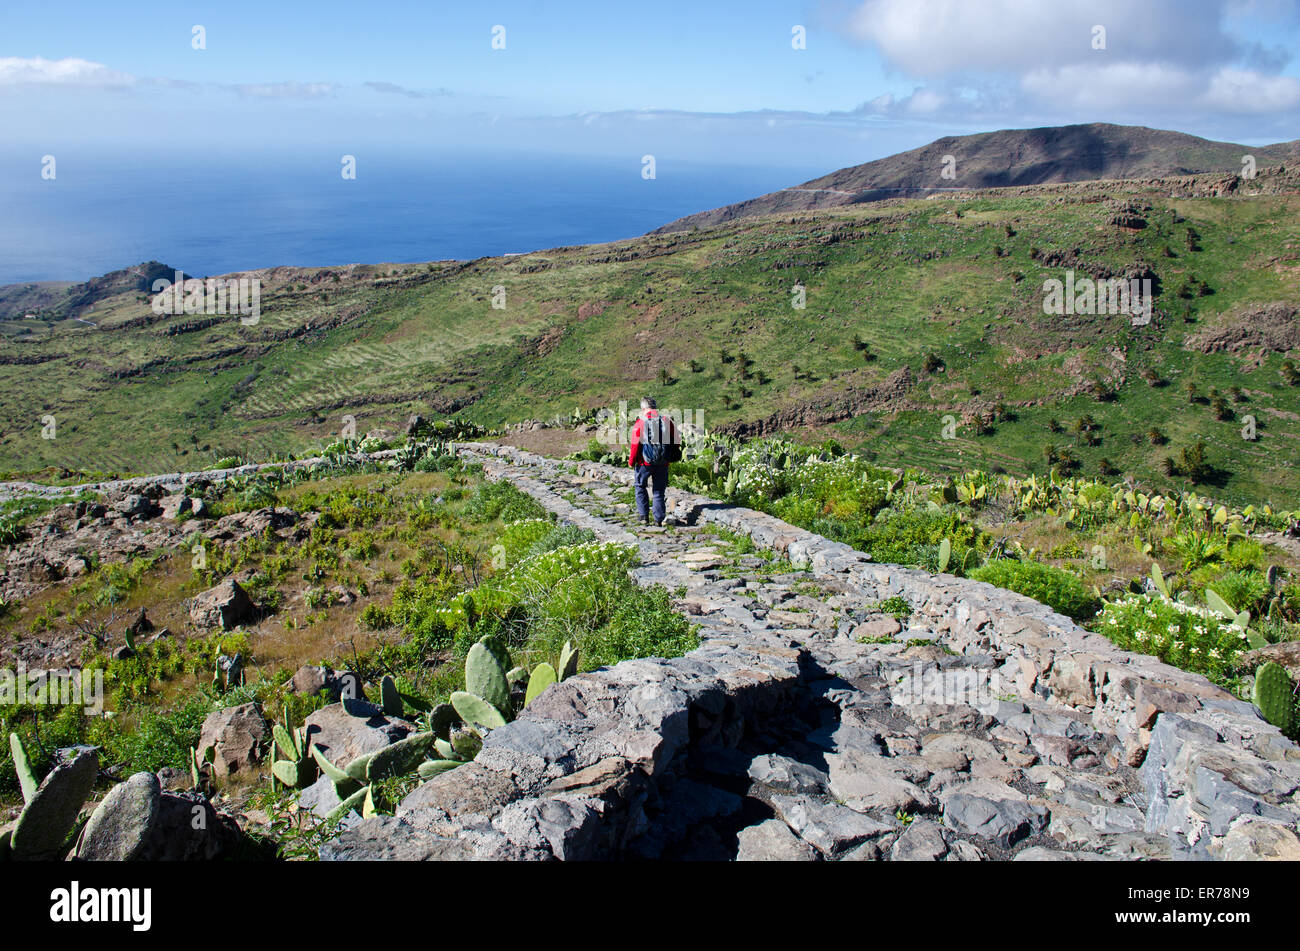 Randonneur sur sentier vers Drago Centenario, île de La Gomera. Canaries, Espagne Banque D'Images